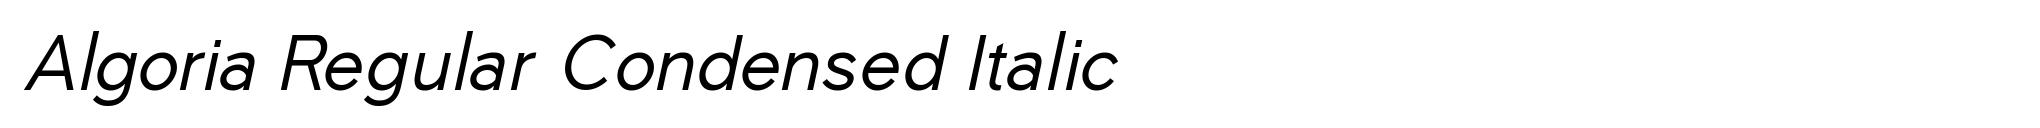 Algoria Regular Condensed Italic image